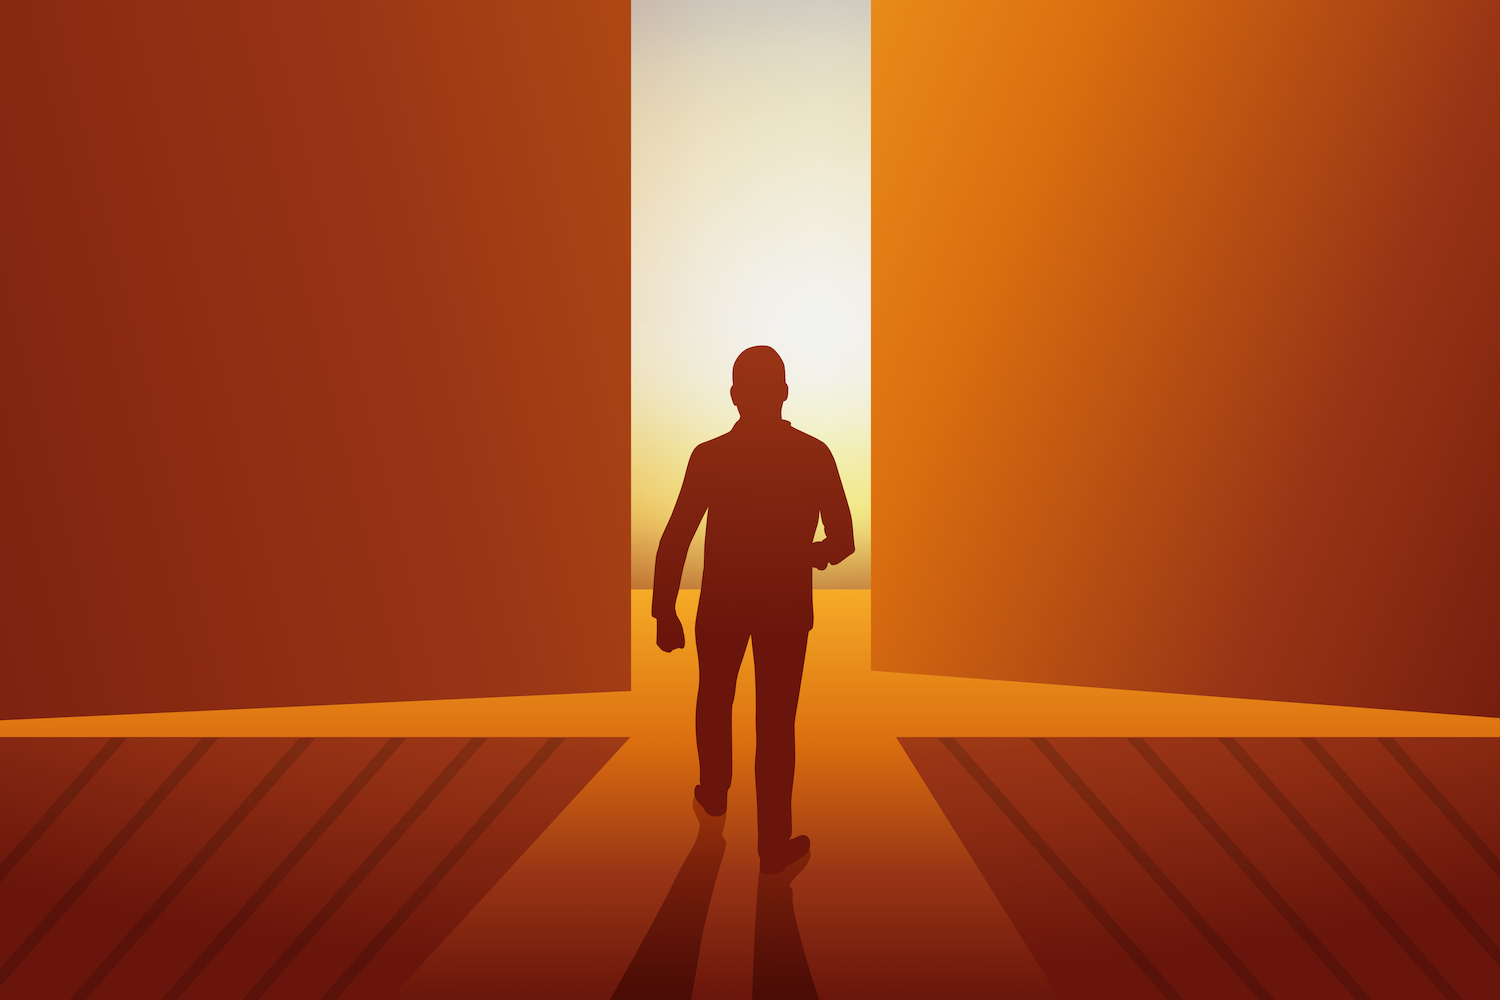 silhouette of man walking into light through open door